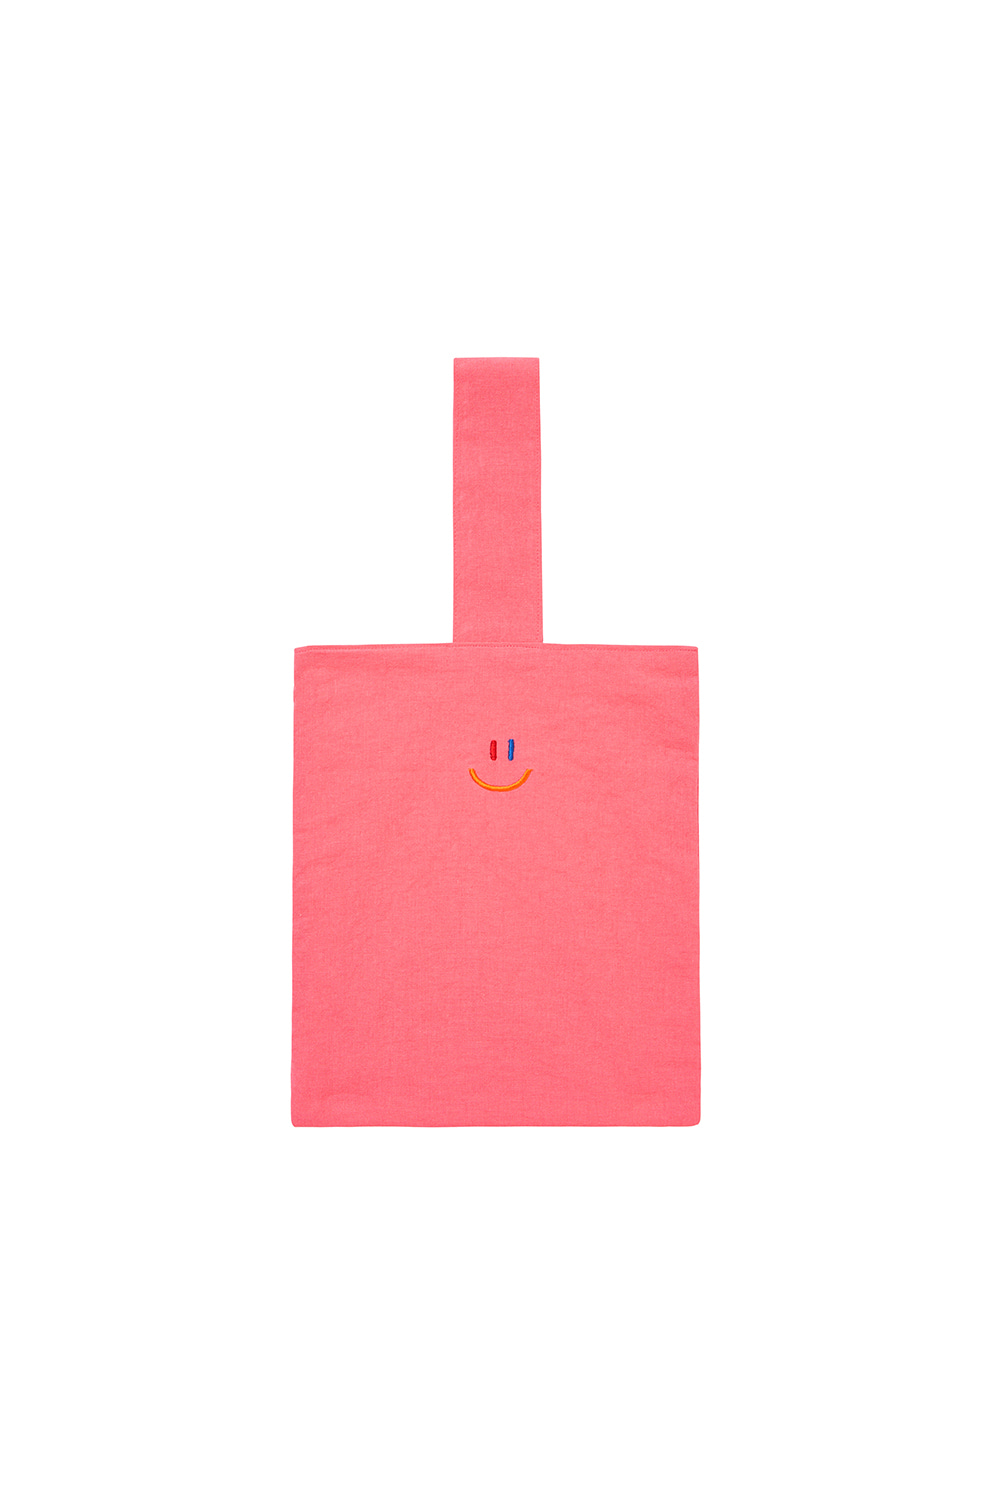 LaLa Eco Bag [Pink]